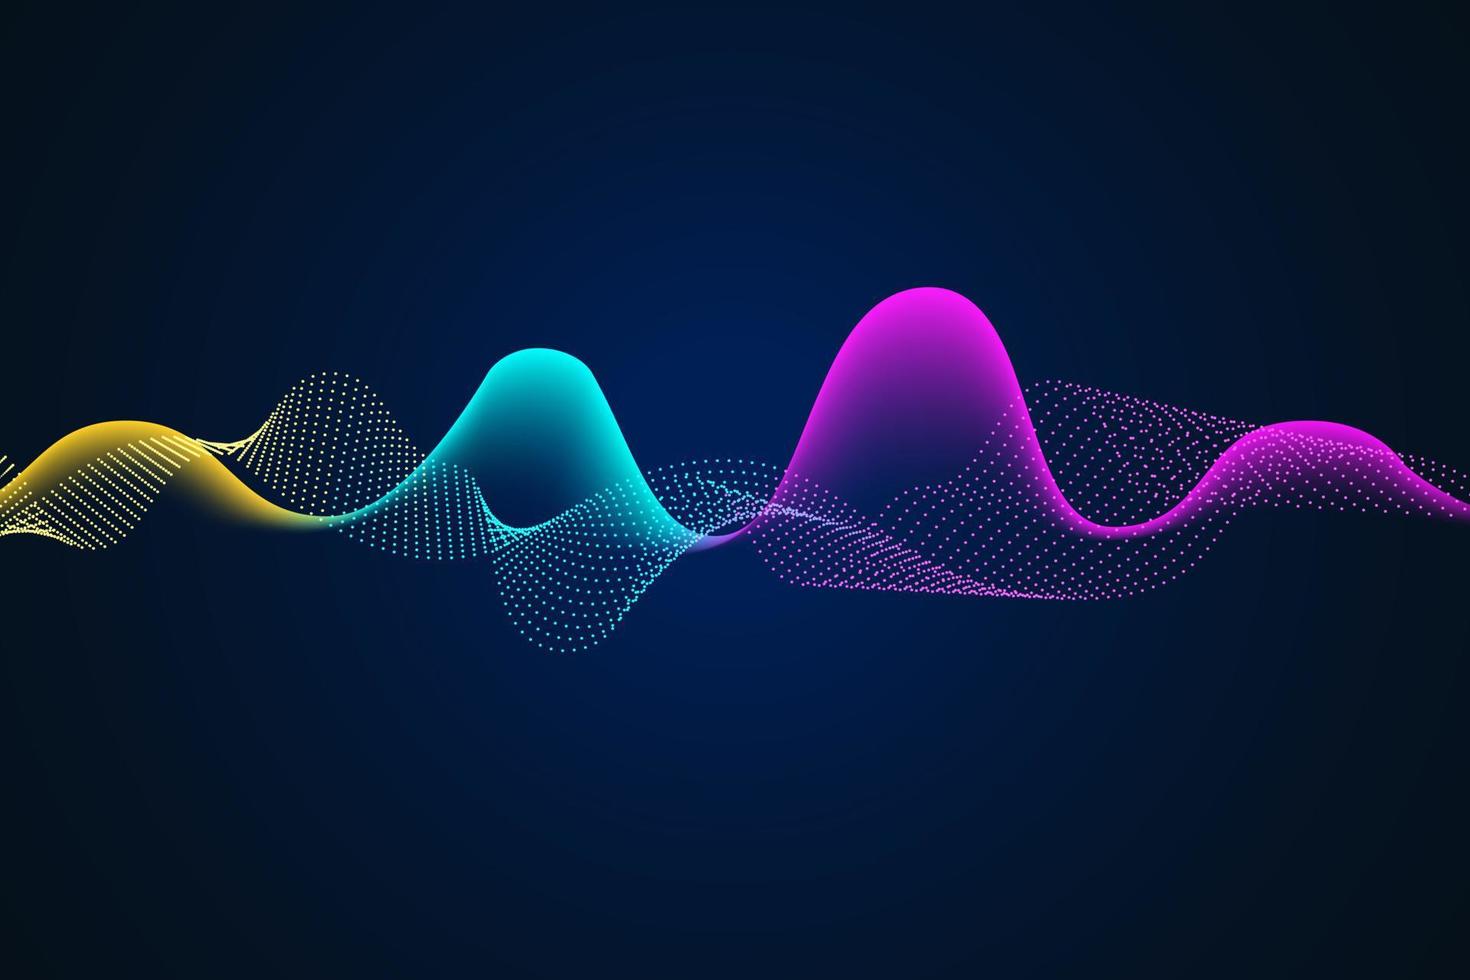 Sound wave illustration on a dark background. Abstract blue digital equalizer indicators. vector